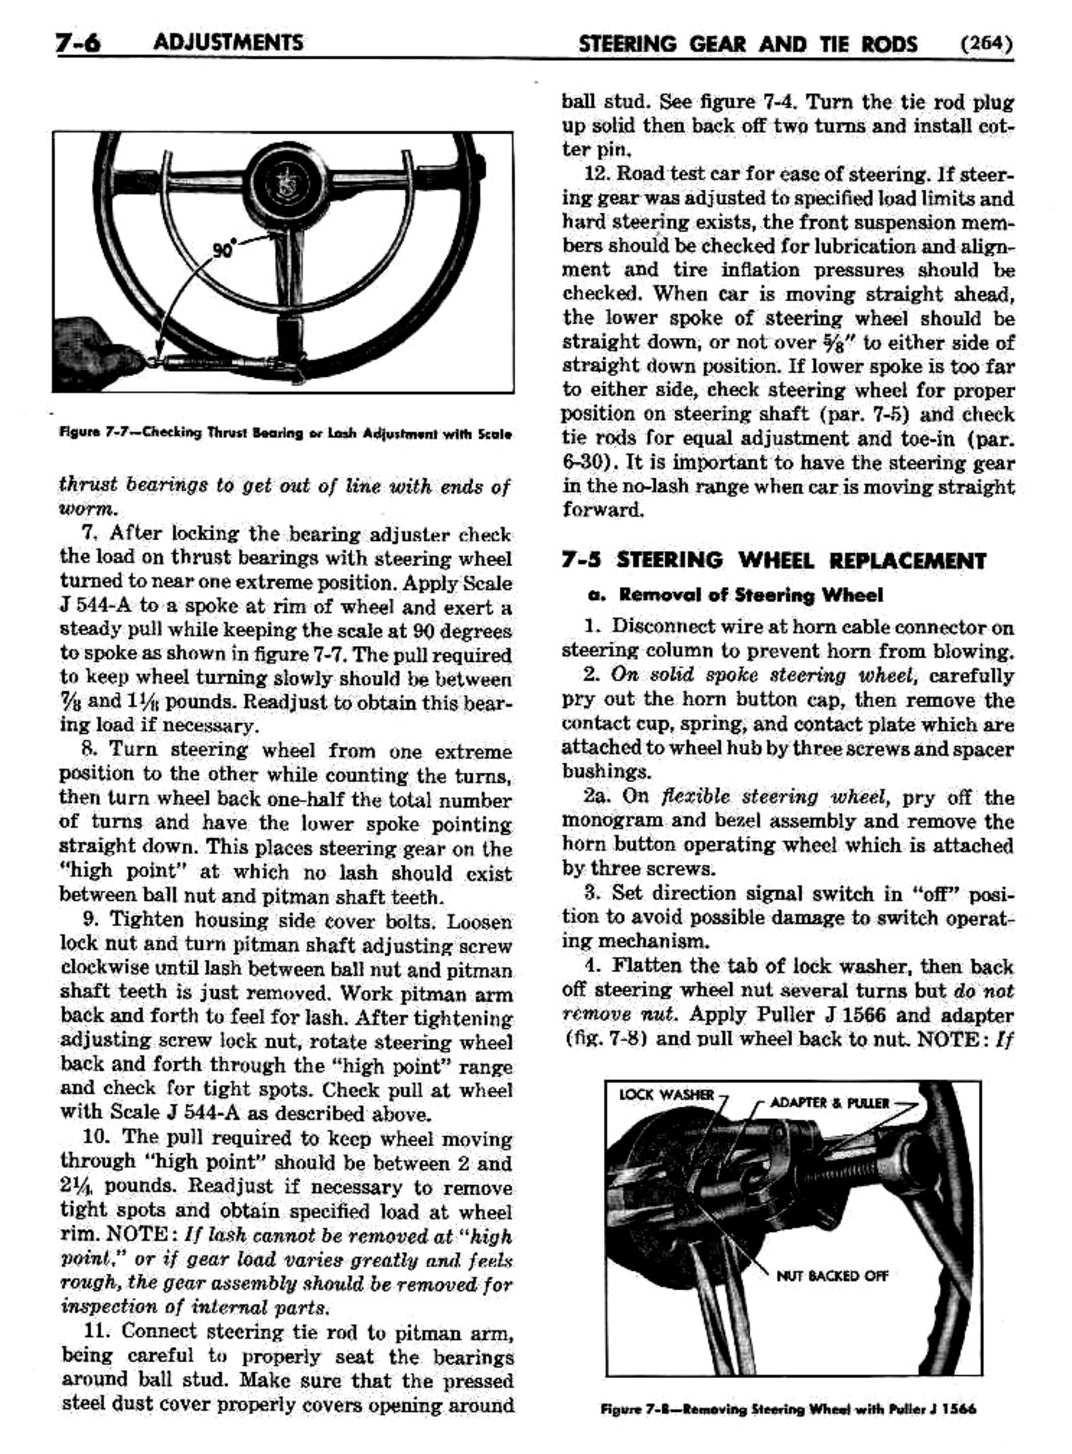 n_08 1951 Buick Shop Manual - Steering-006-006.jpg